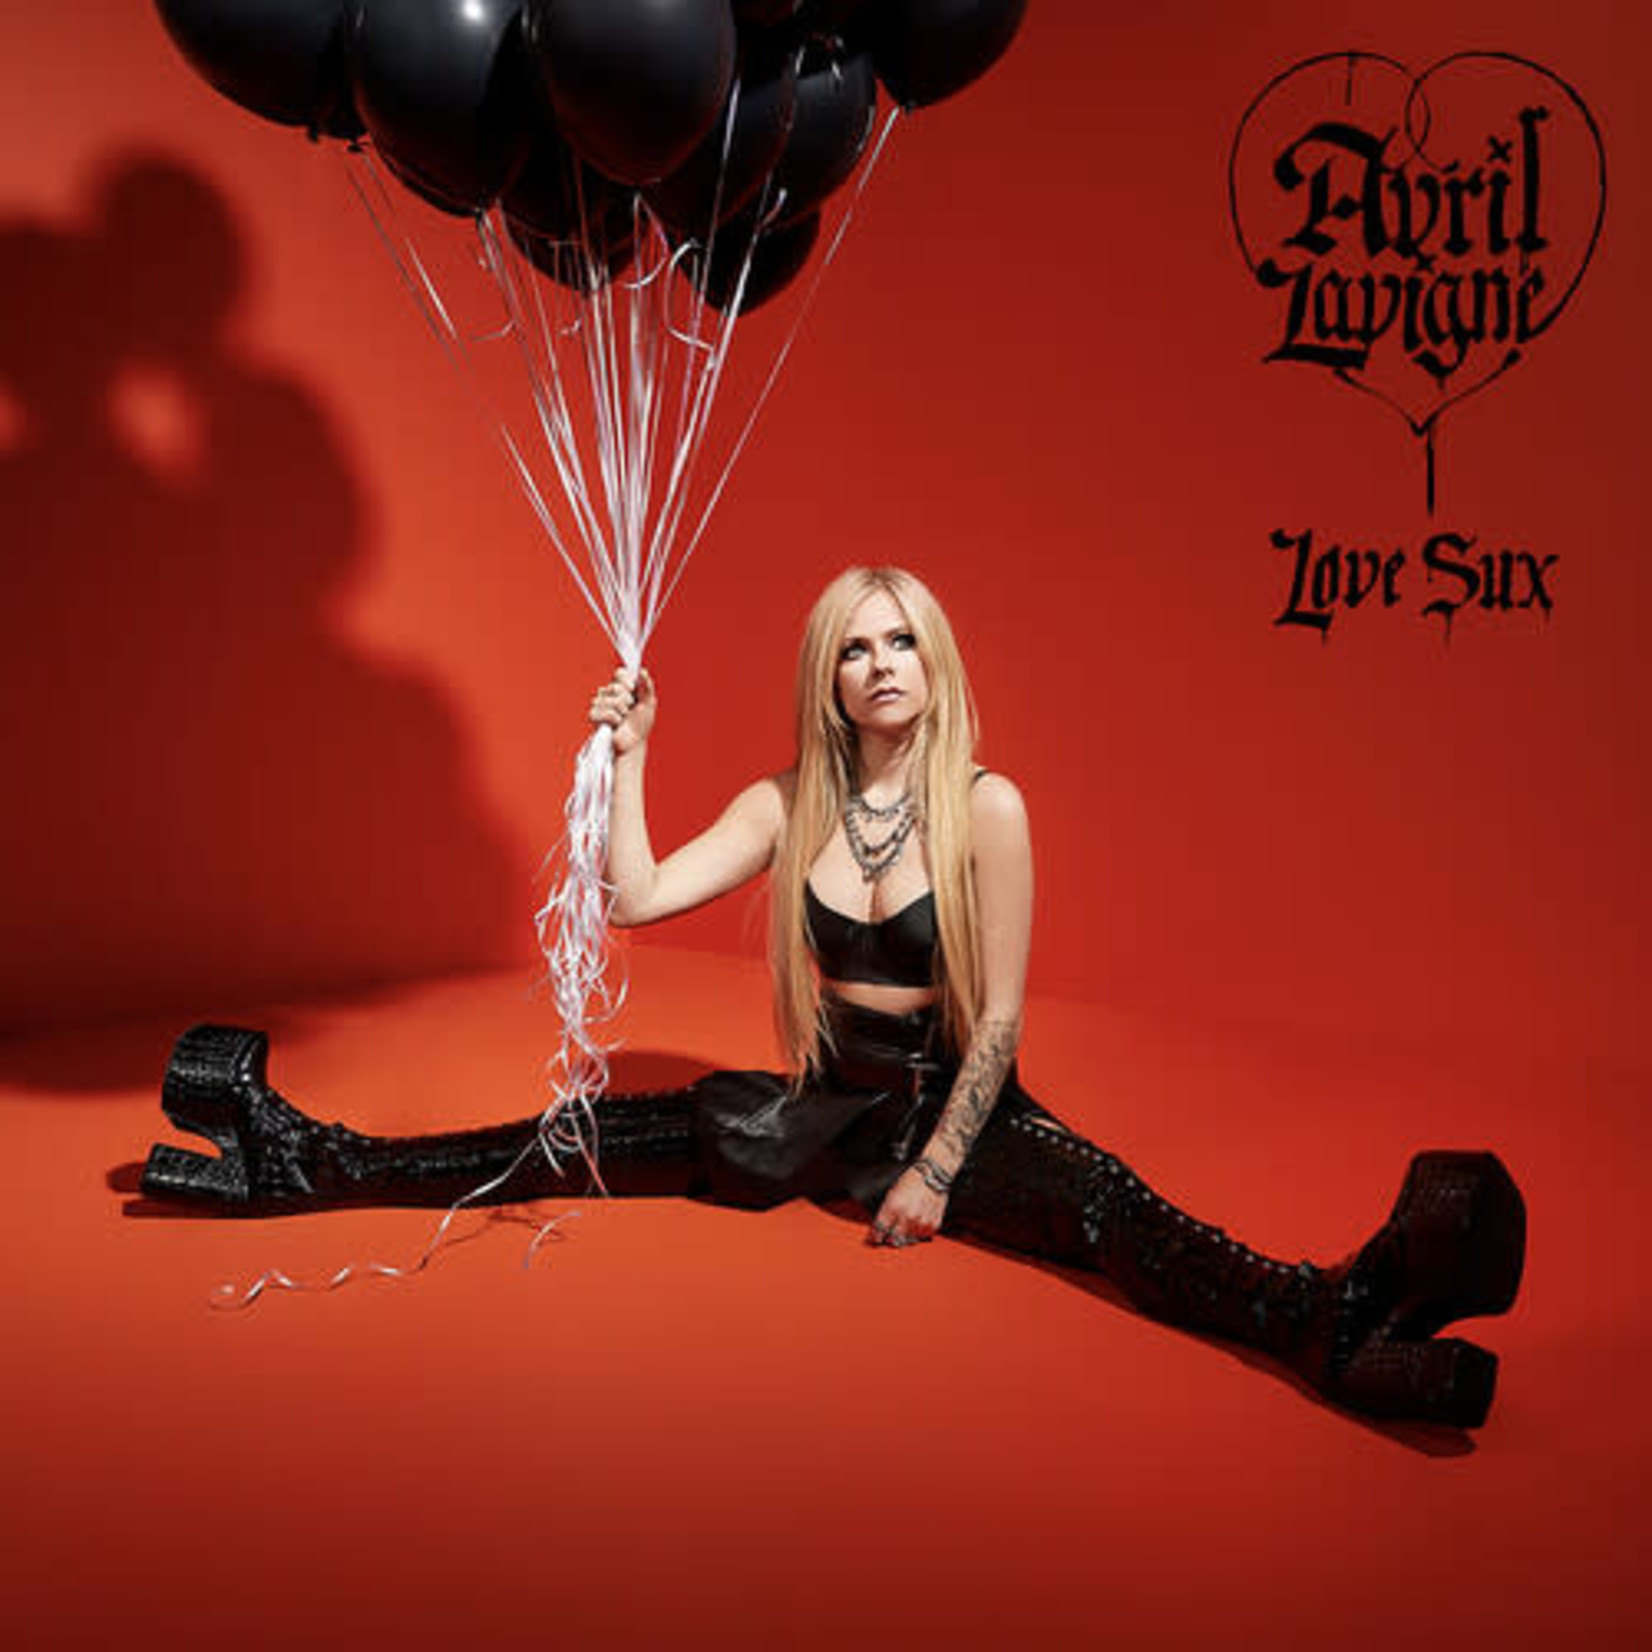 Avril Lavigne - Love Sux [CD]